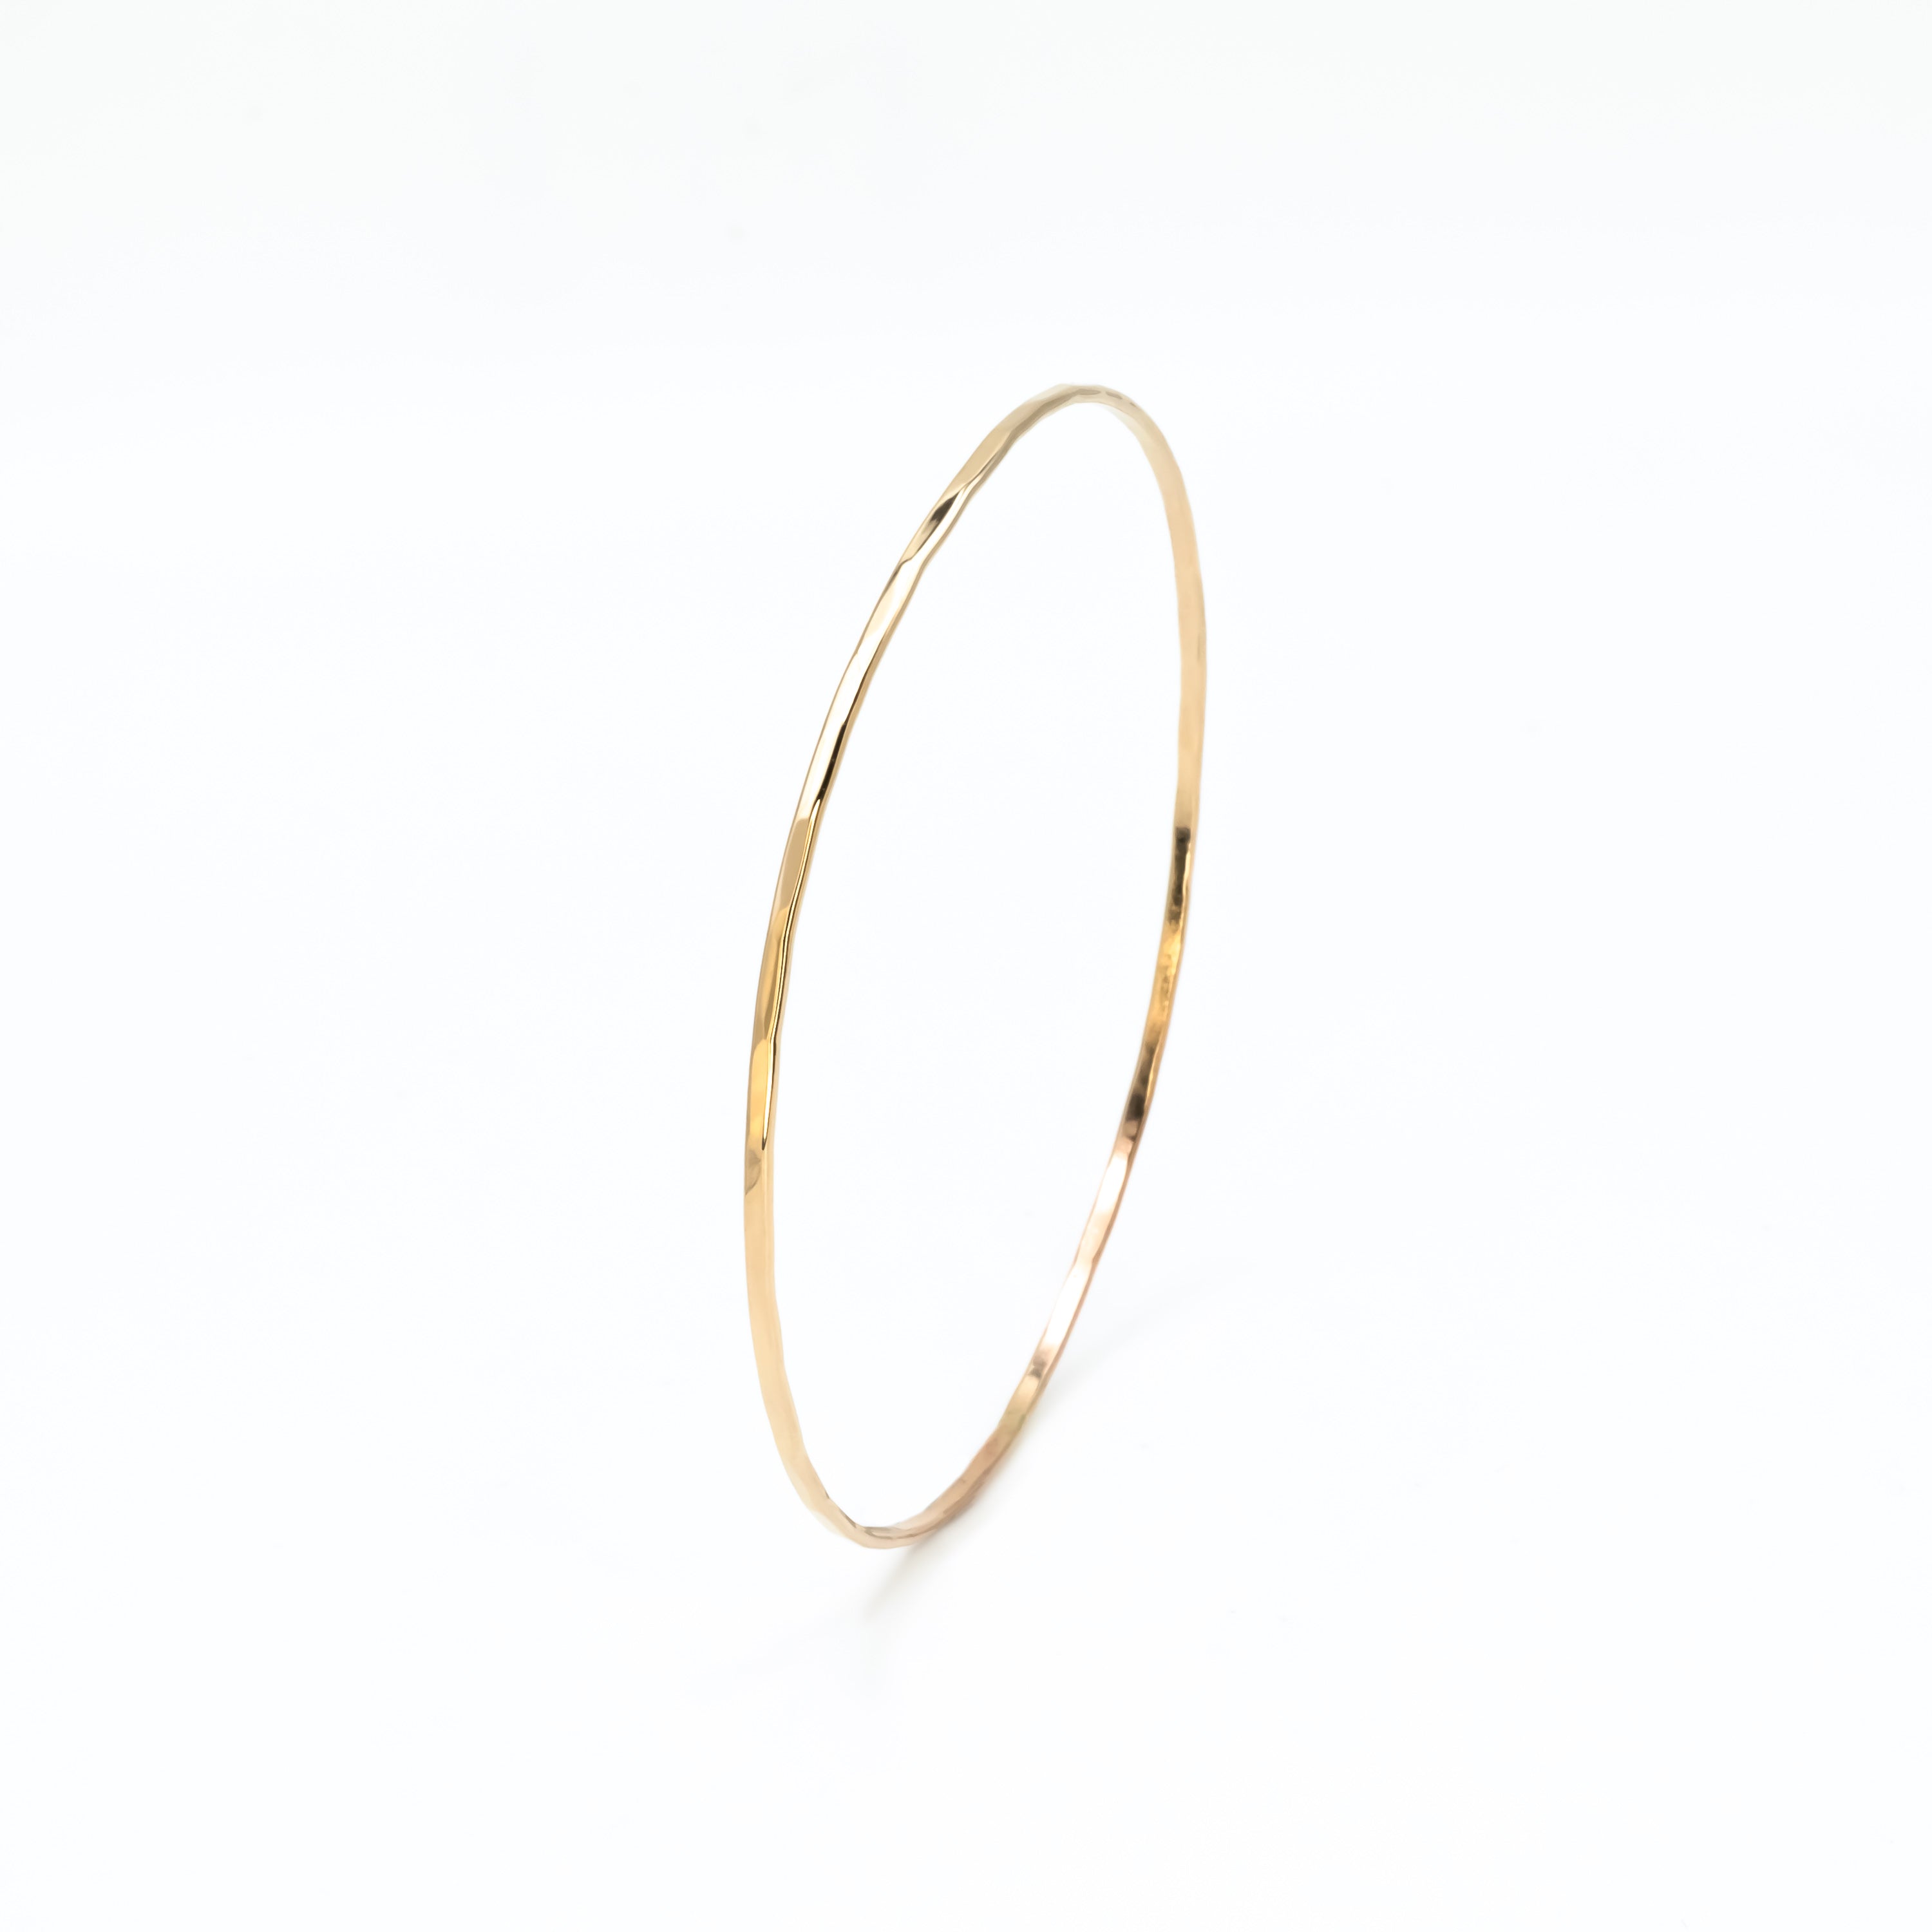 Skinny Faceted Solid 14K Gold Bangle Bracelet